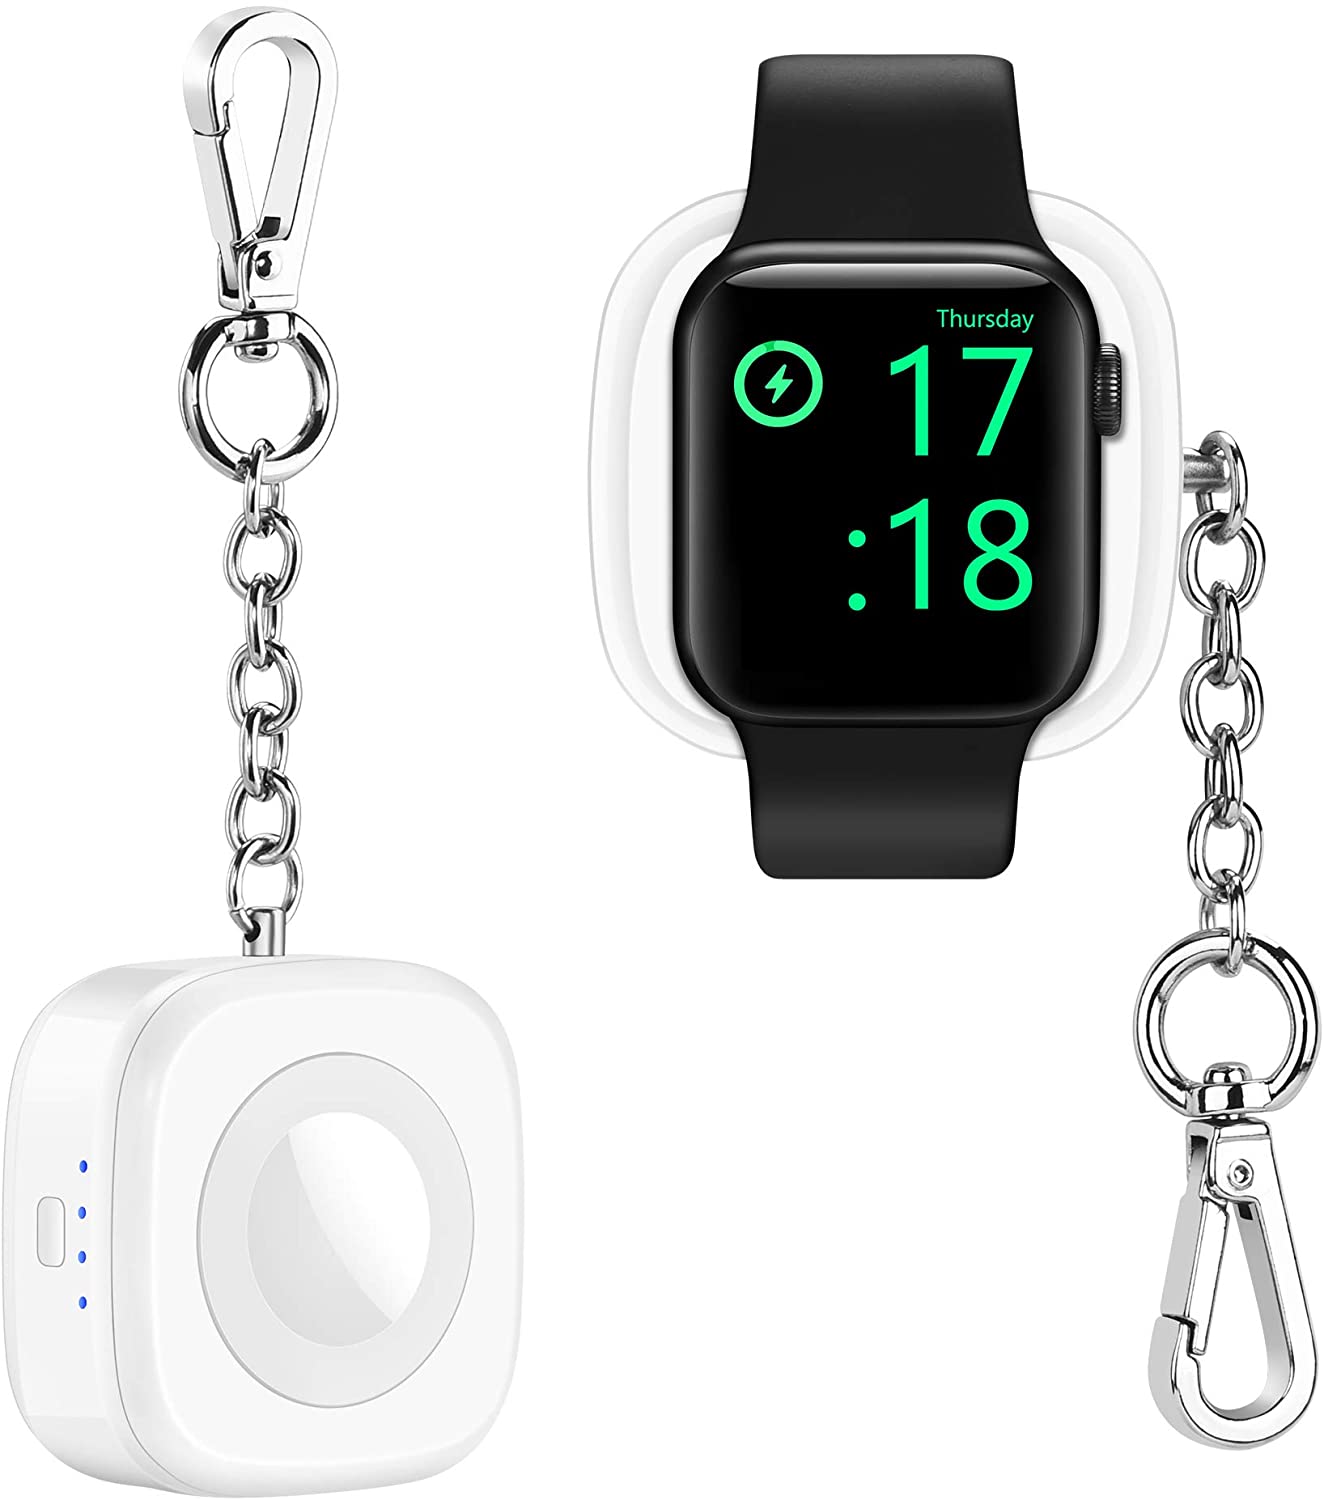 Apple MFi 認証Apple Watch 充電器 アップルウォッチ 充電器 1000mAh 純正 iWatch ワイヤレス磁気充電器 Apple ウォッチパワーバンク AppleWatch モバイルバッテリー モバイルポータブルアップルウォッチ